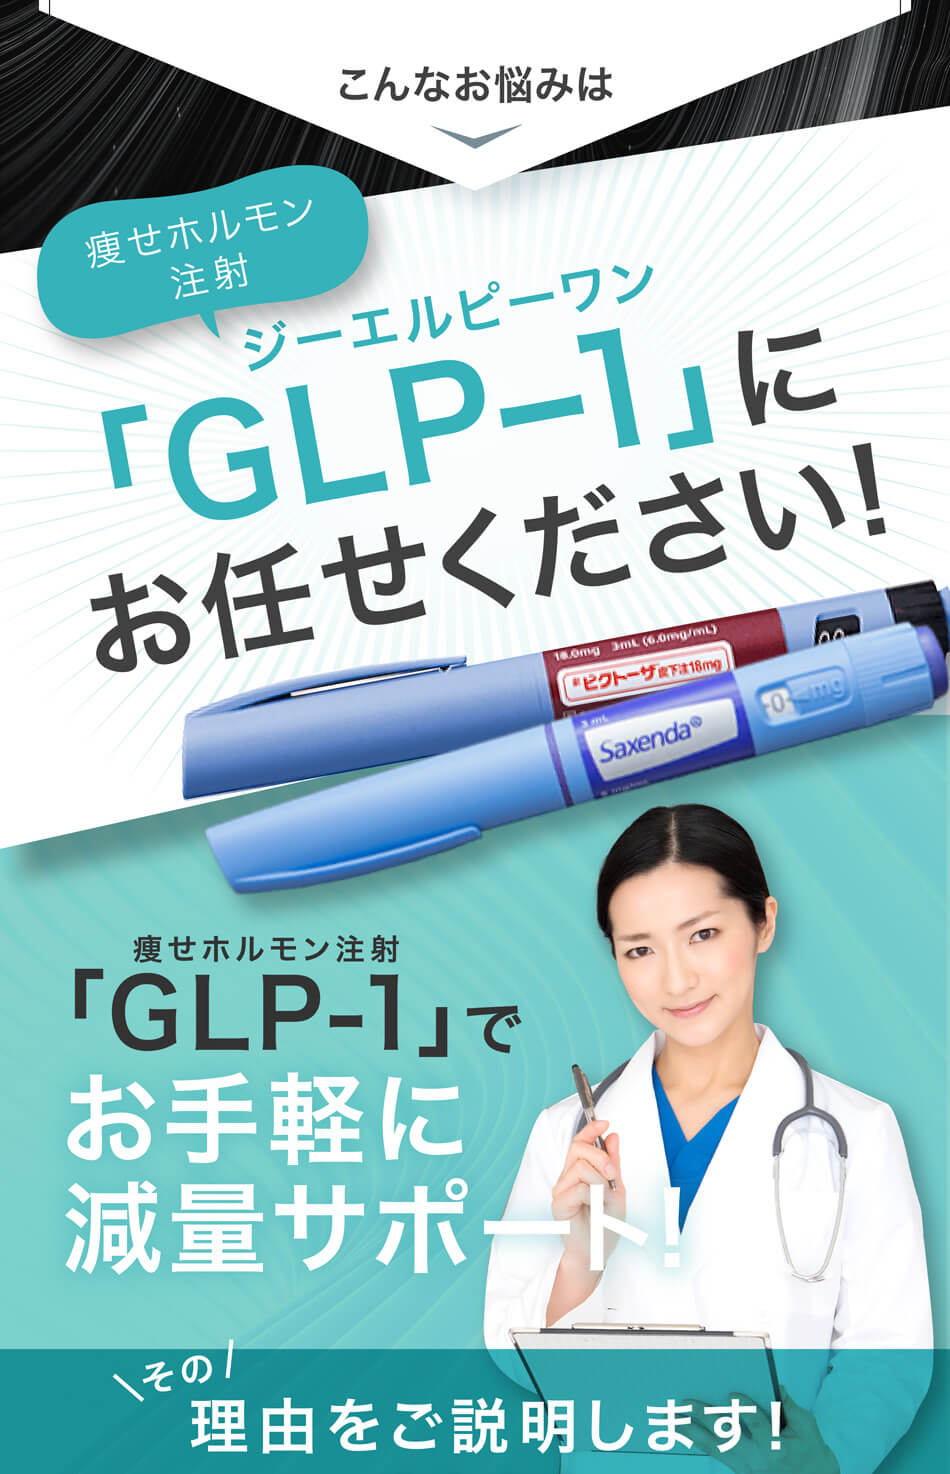 こんなお悩みは痩せホルモン注射 ジーエルピーワン「GLP-1」にお任せください! 痩せホルモン注射「GLP-1」でお手軽に減量サポート!その理由をご説明します！